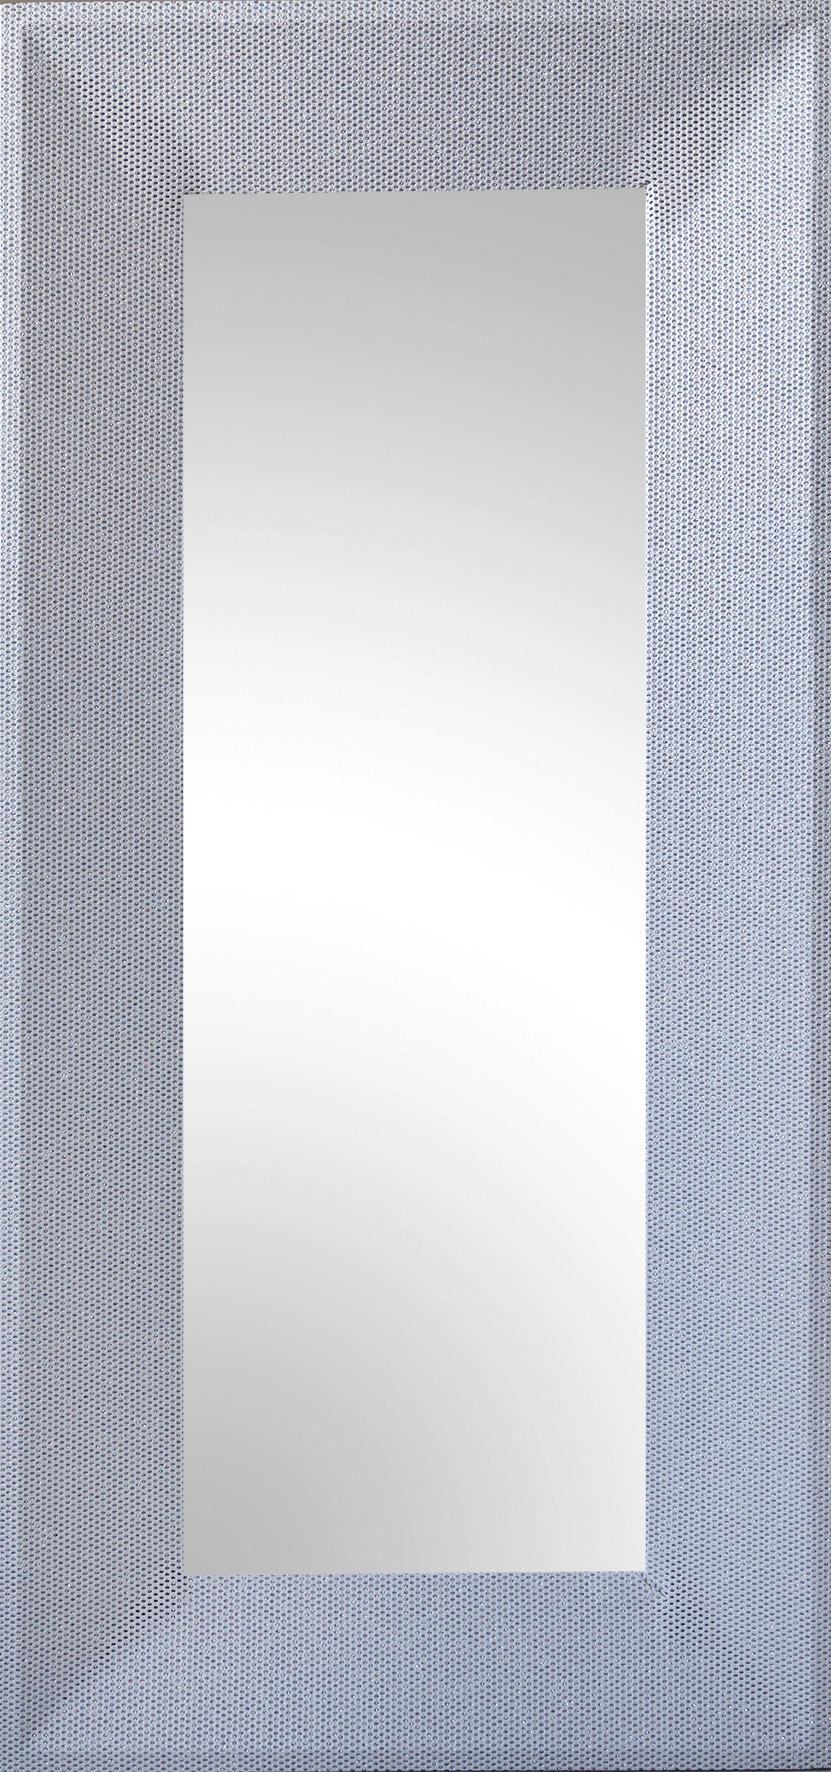 Rahmenspiegel Glitty silber glitzernd Optik B/H: ca. 65x140 cm Glitty - silber (65,00/140,00cm)